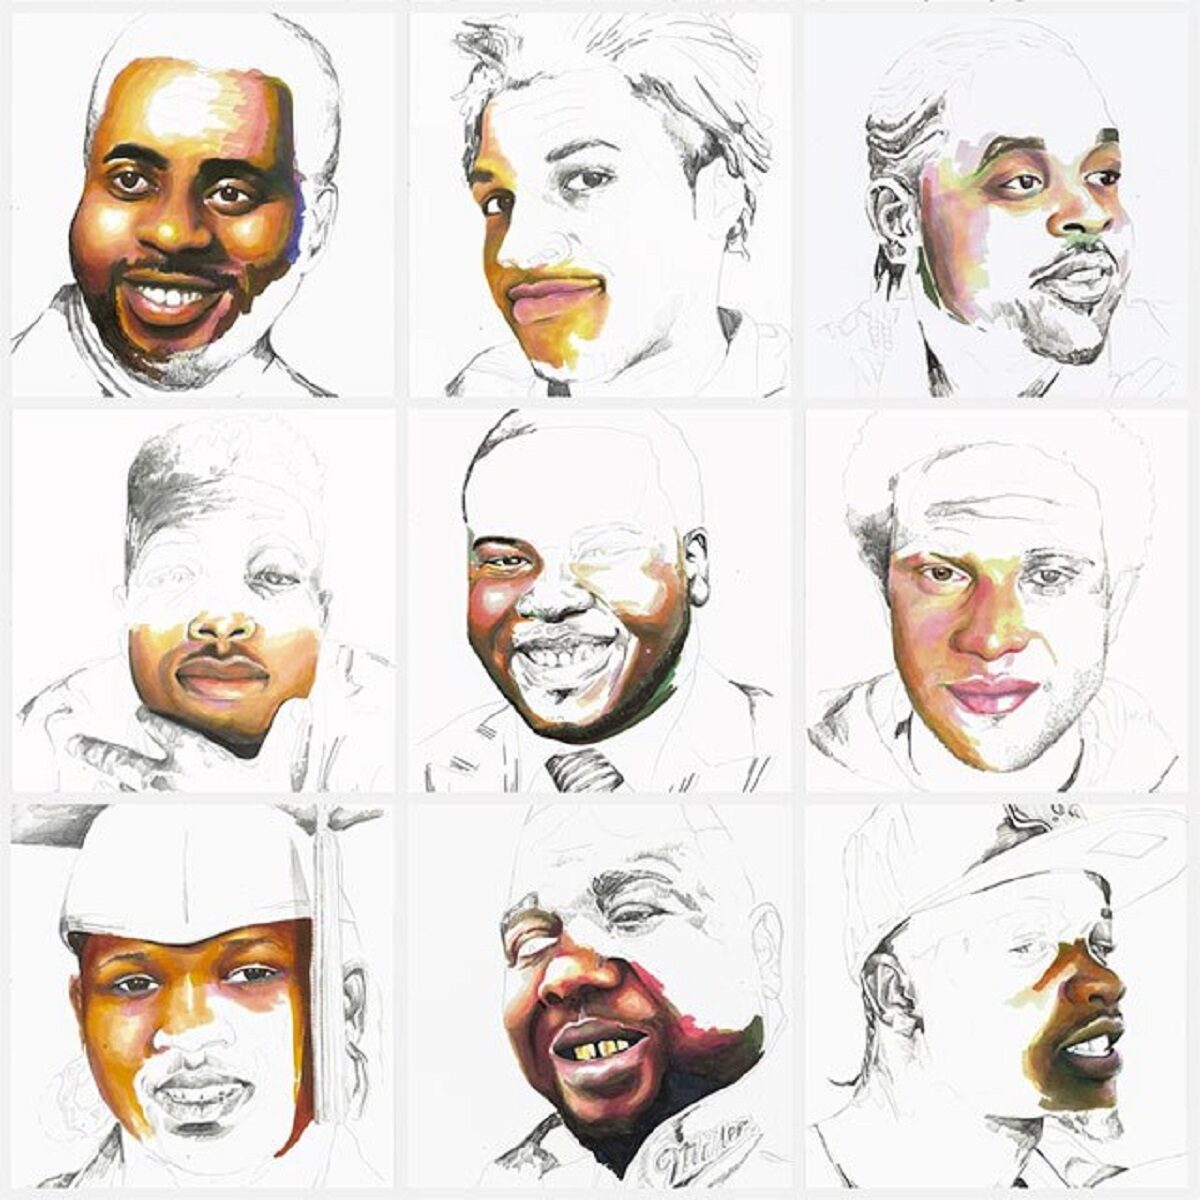 Stolen artista Adrian Brandon cria obra dedicada a negros mortos por policiais 13